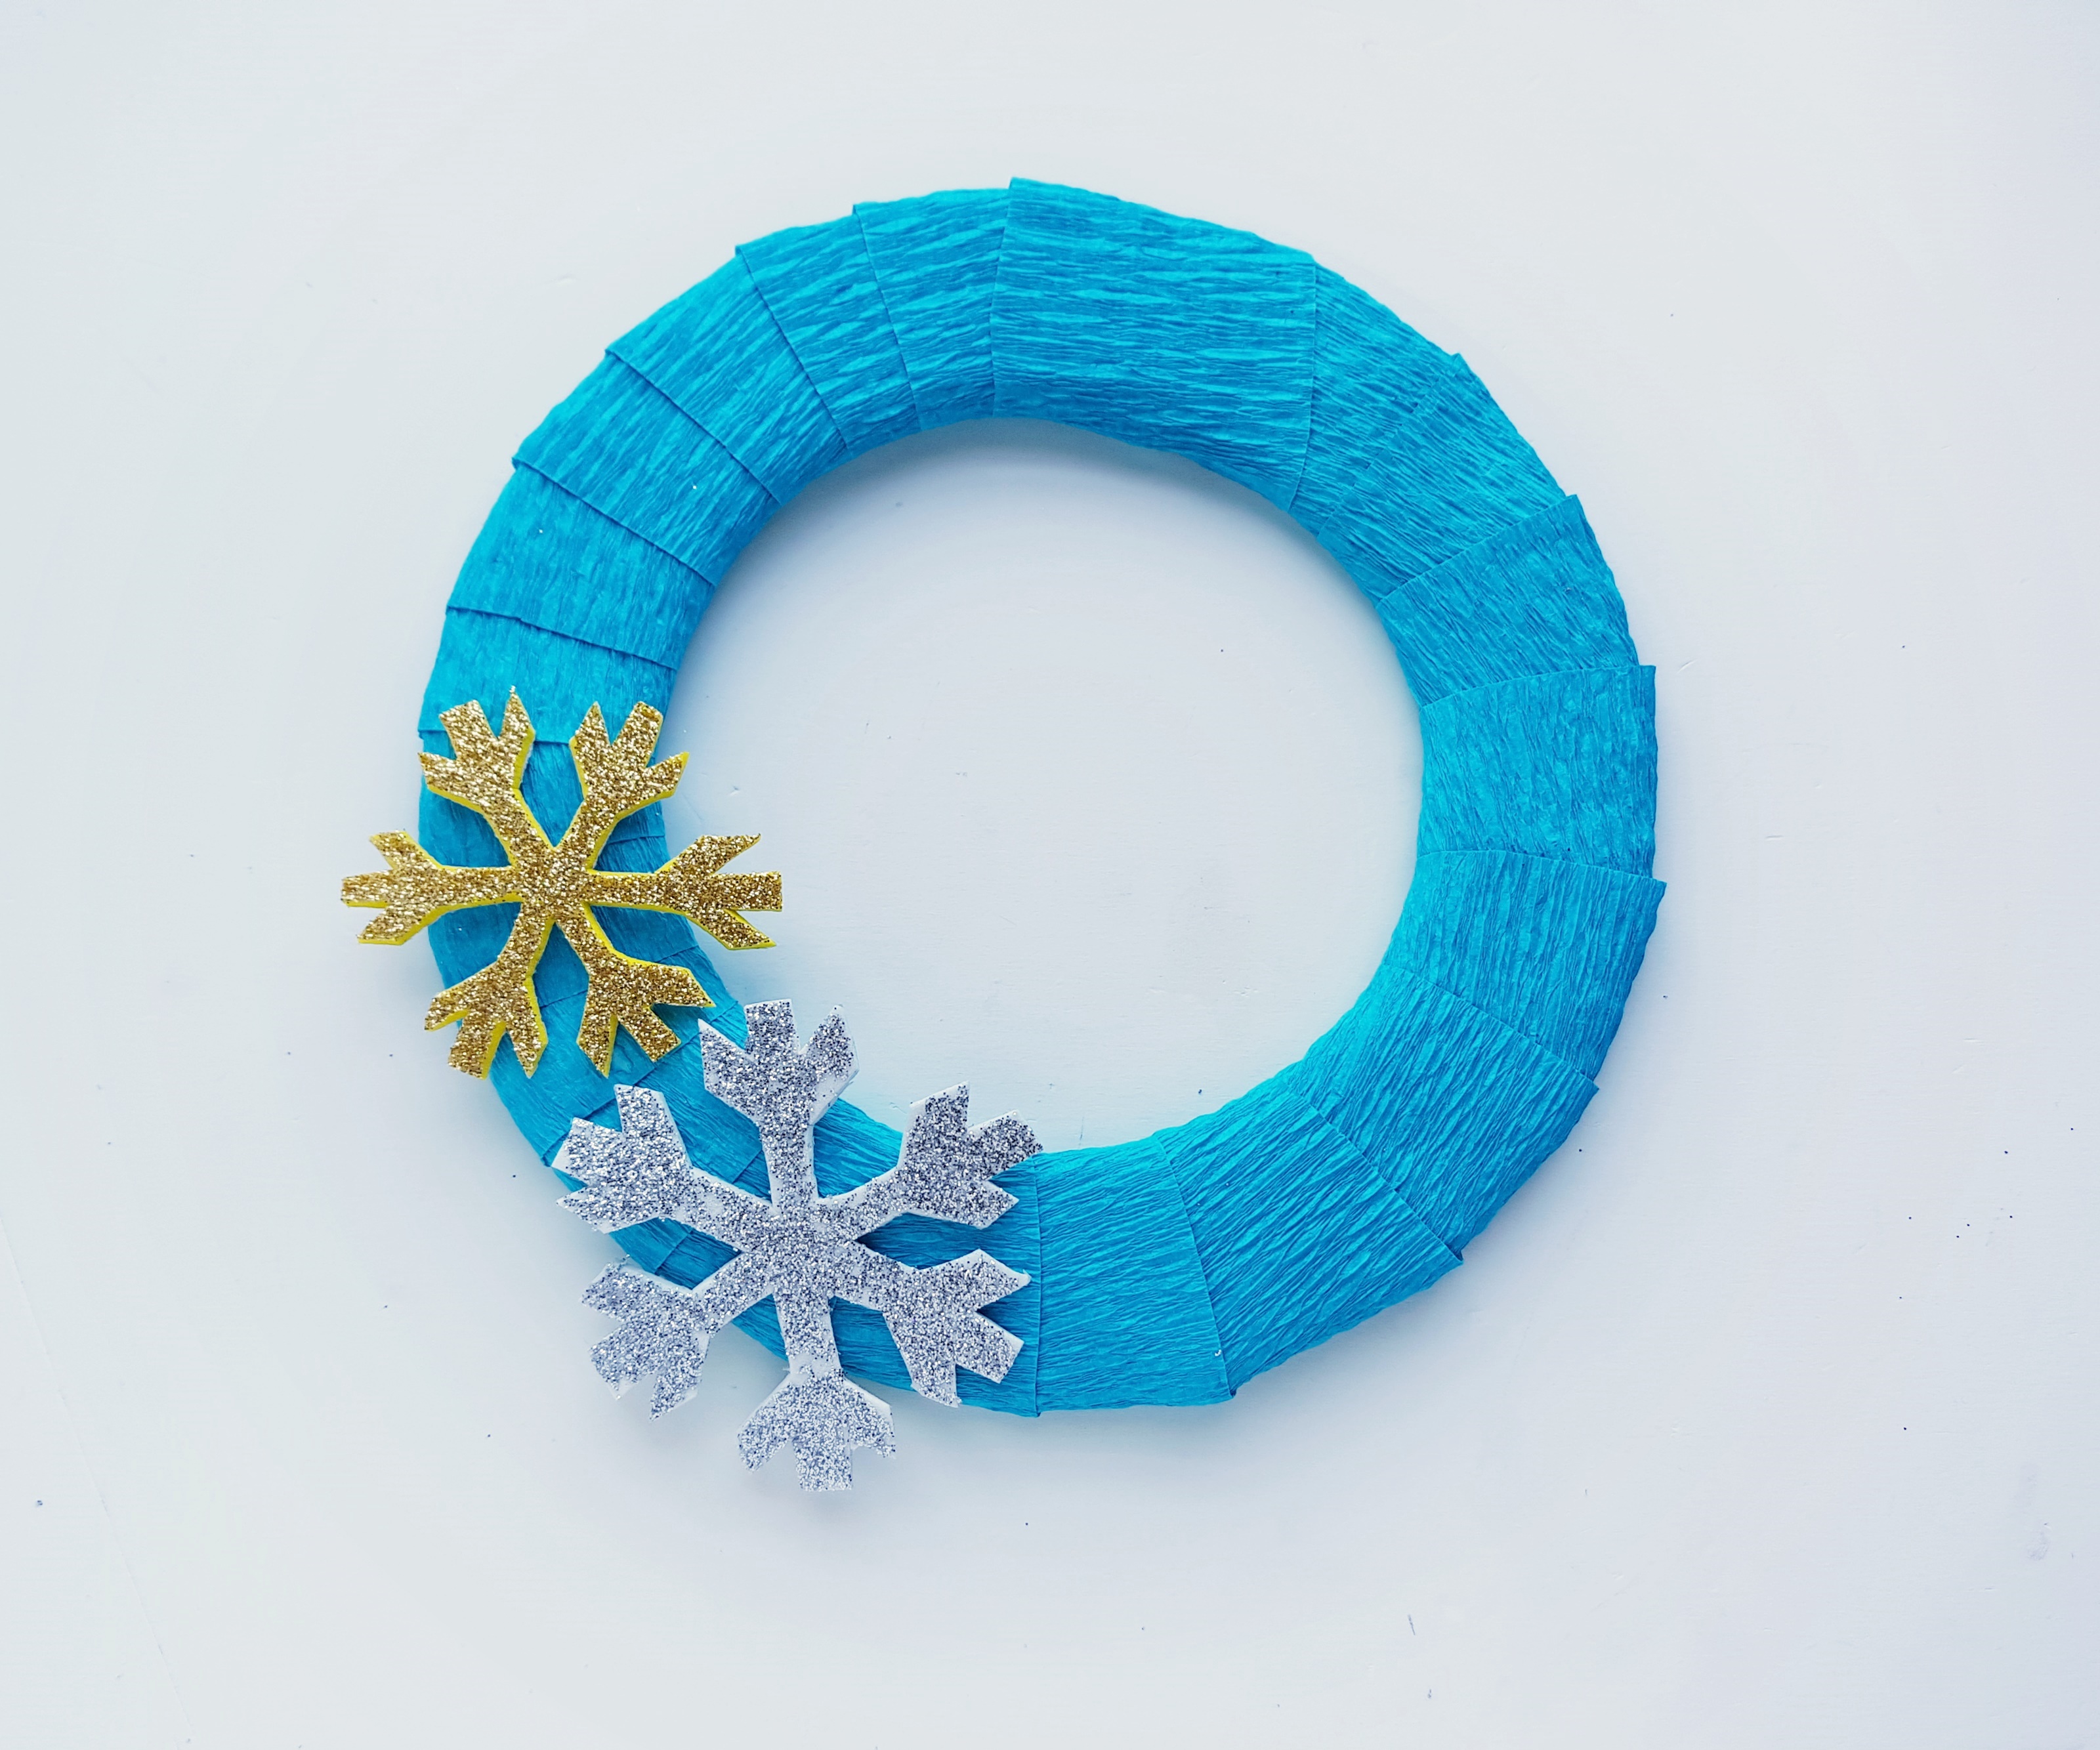 Frozen inspired craft